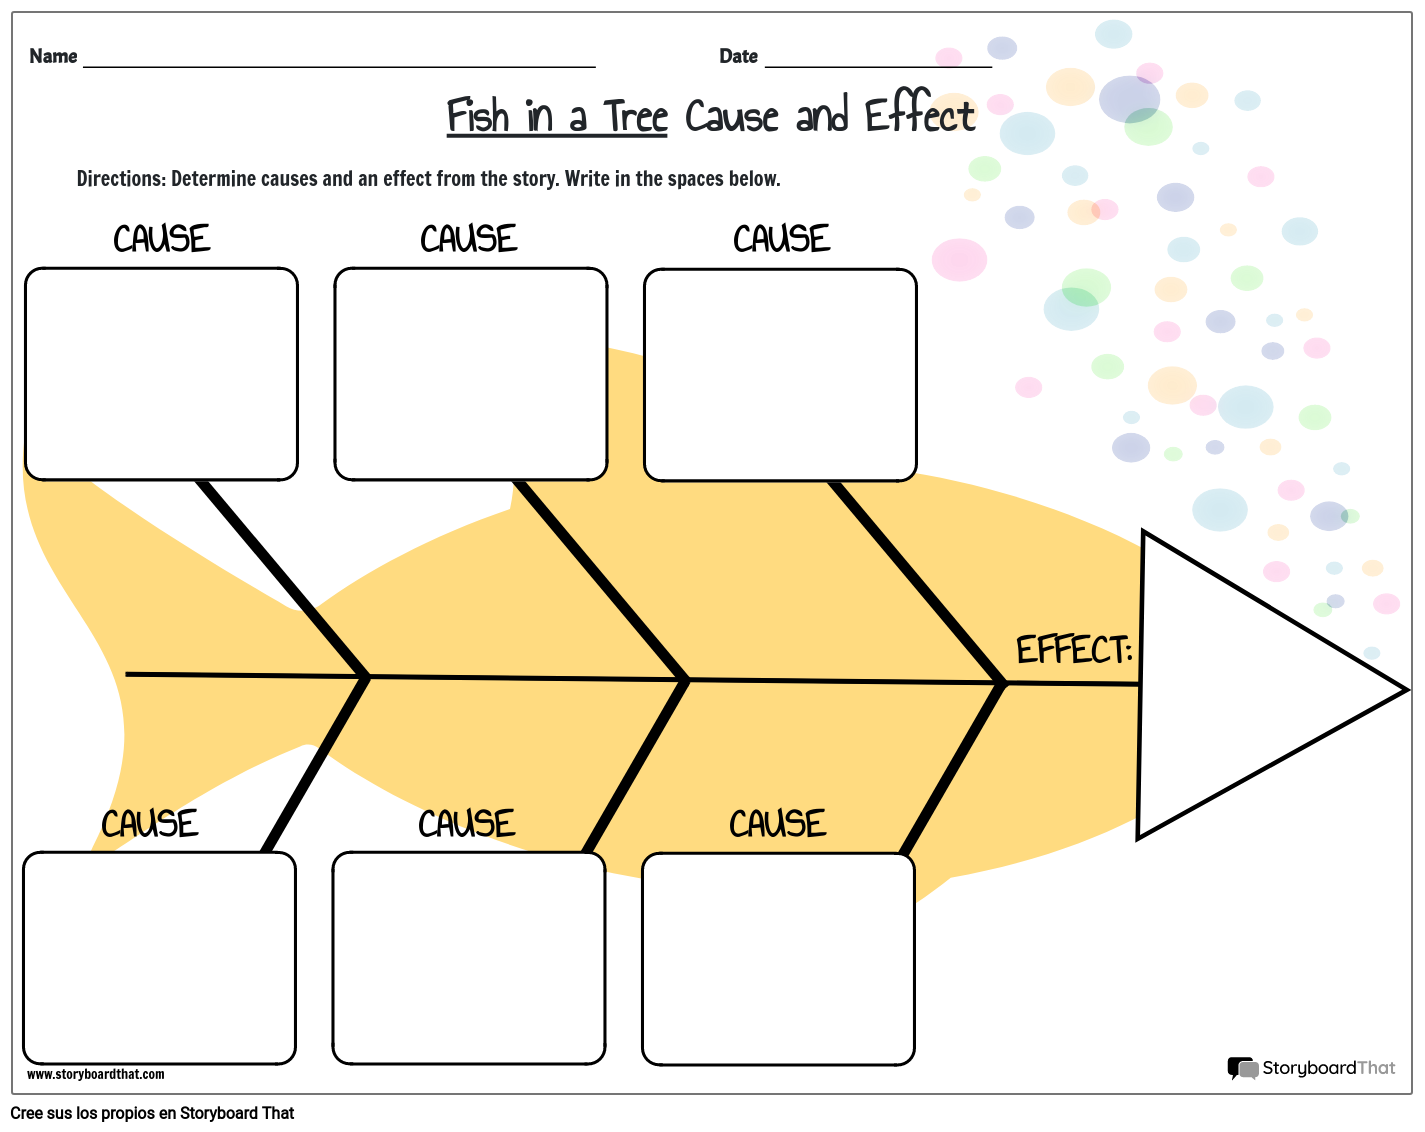 ejemplo-de-causa-y-efecto-storyboard-od-es-examples